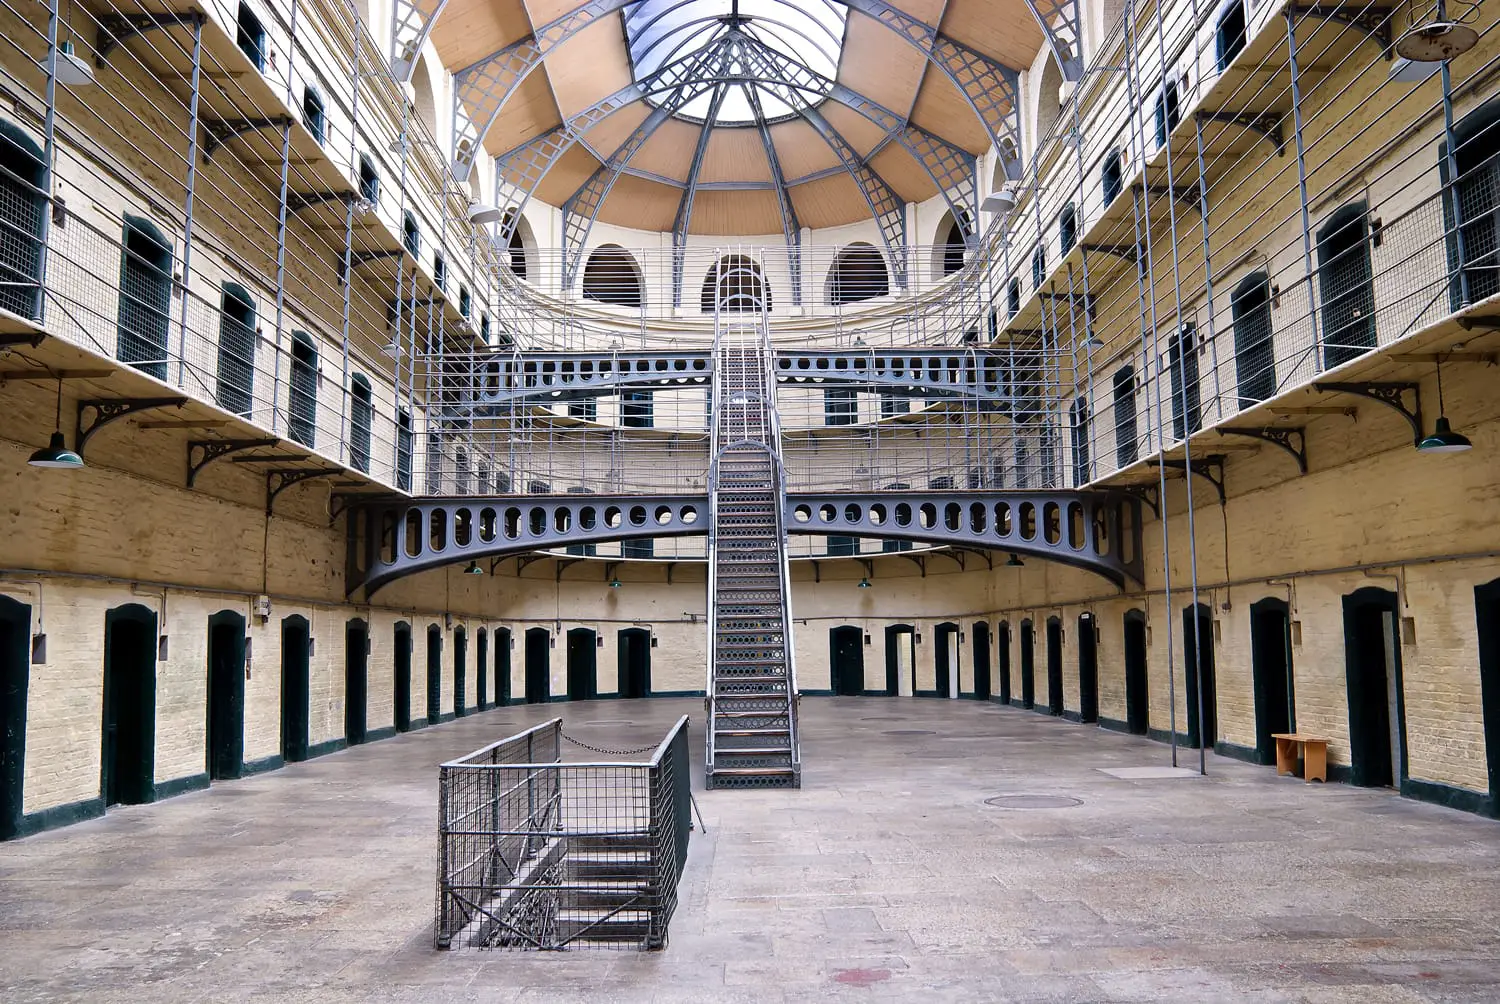 Το Kilmainham Gaol (ιρλανδικά: Kilmainham Prison), που χτίστηκε για πρώτη φορά το 1796, είναι μια πρώην φυλακή, που βρίσκεται στο Kilmainham στο Δουβλίνο και έπαιξε σημαντικό ρόλο στην ιστορία της Ιρλανδίας.